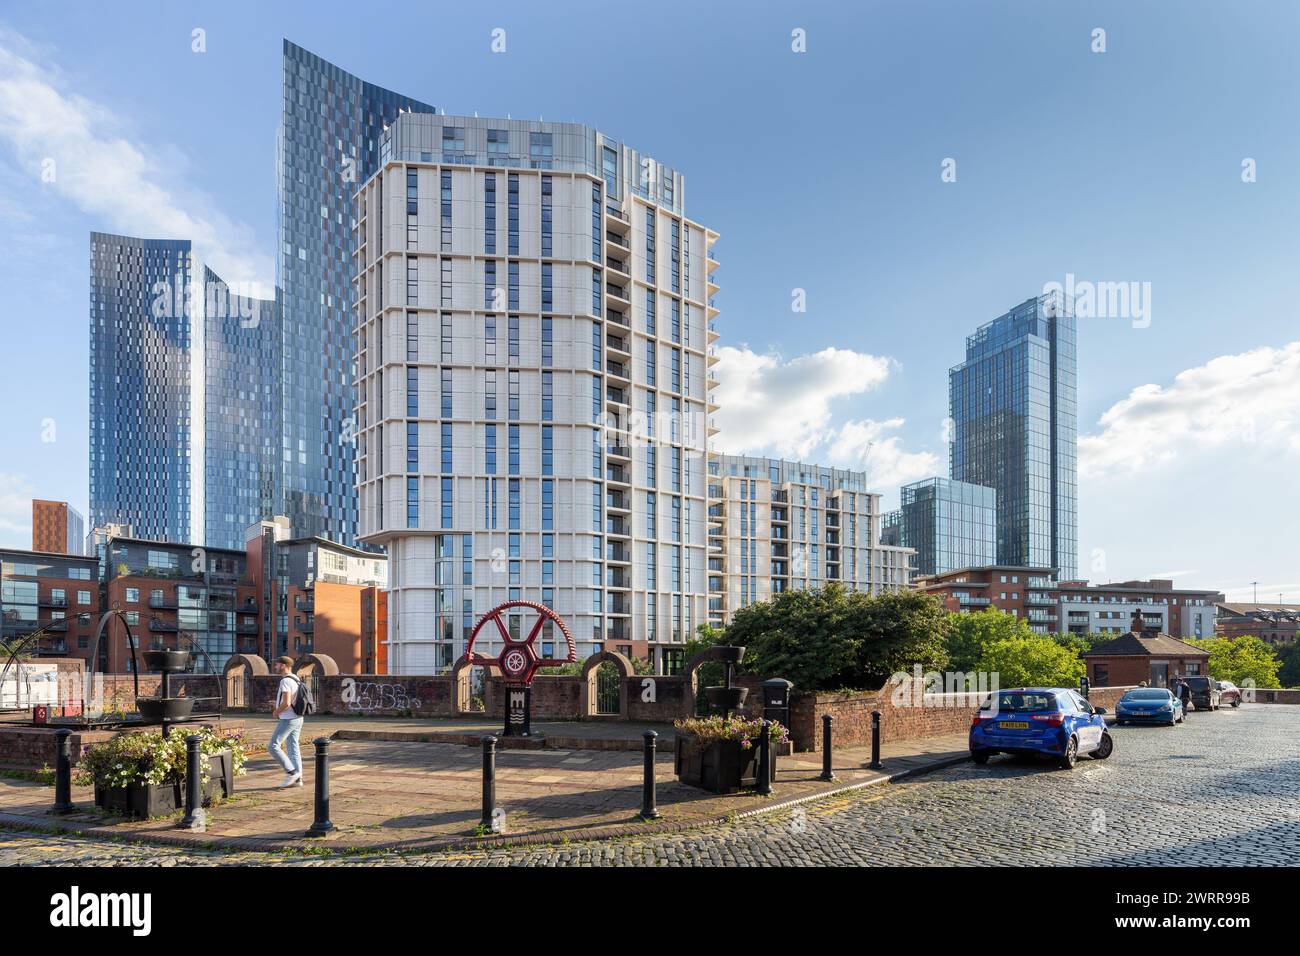 Blick auf die Castle Wharf Apartmentgebäude im Stadtzentrum von Manchester, Großbritannien, mit Deansgate Square und Crown Street Türmen in der Ferne Stockfoto